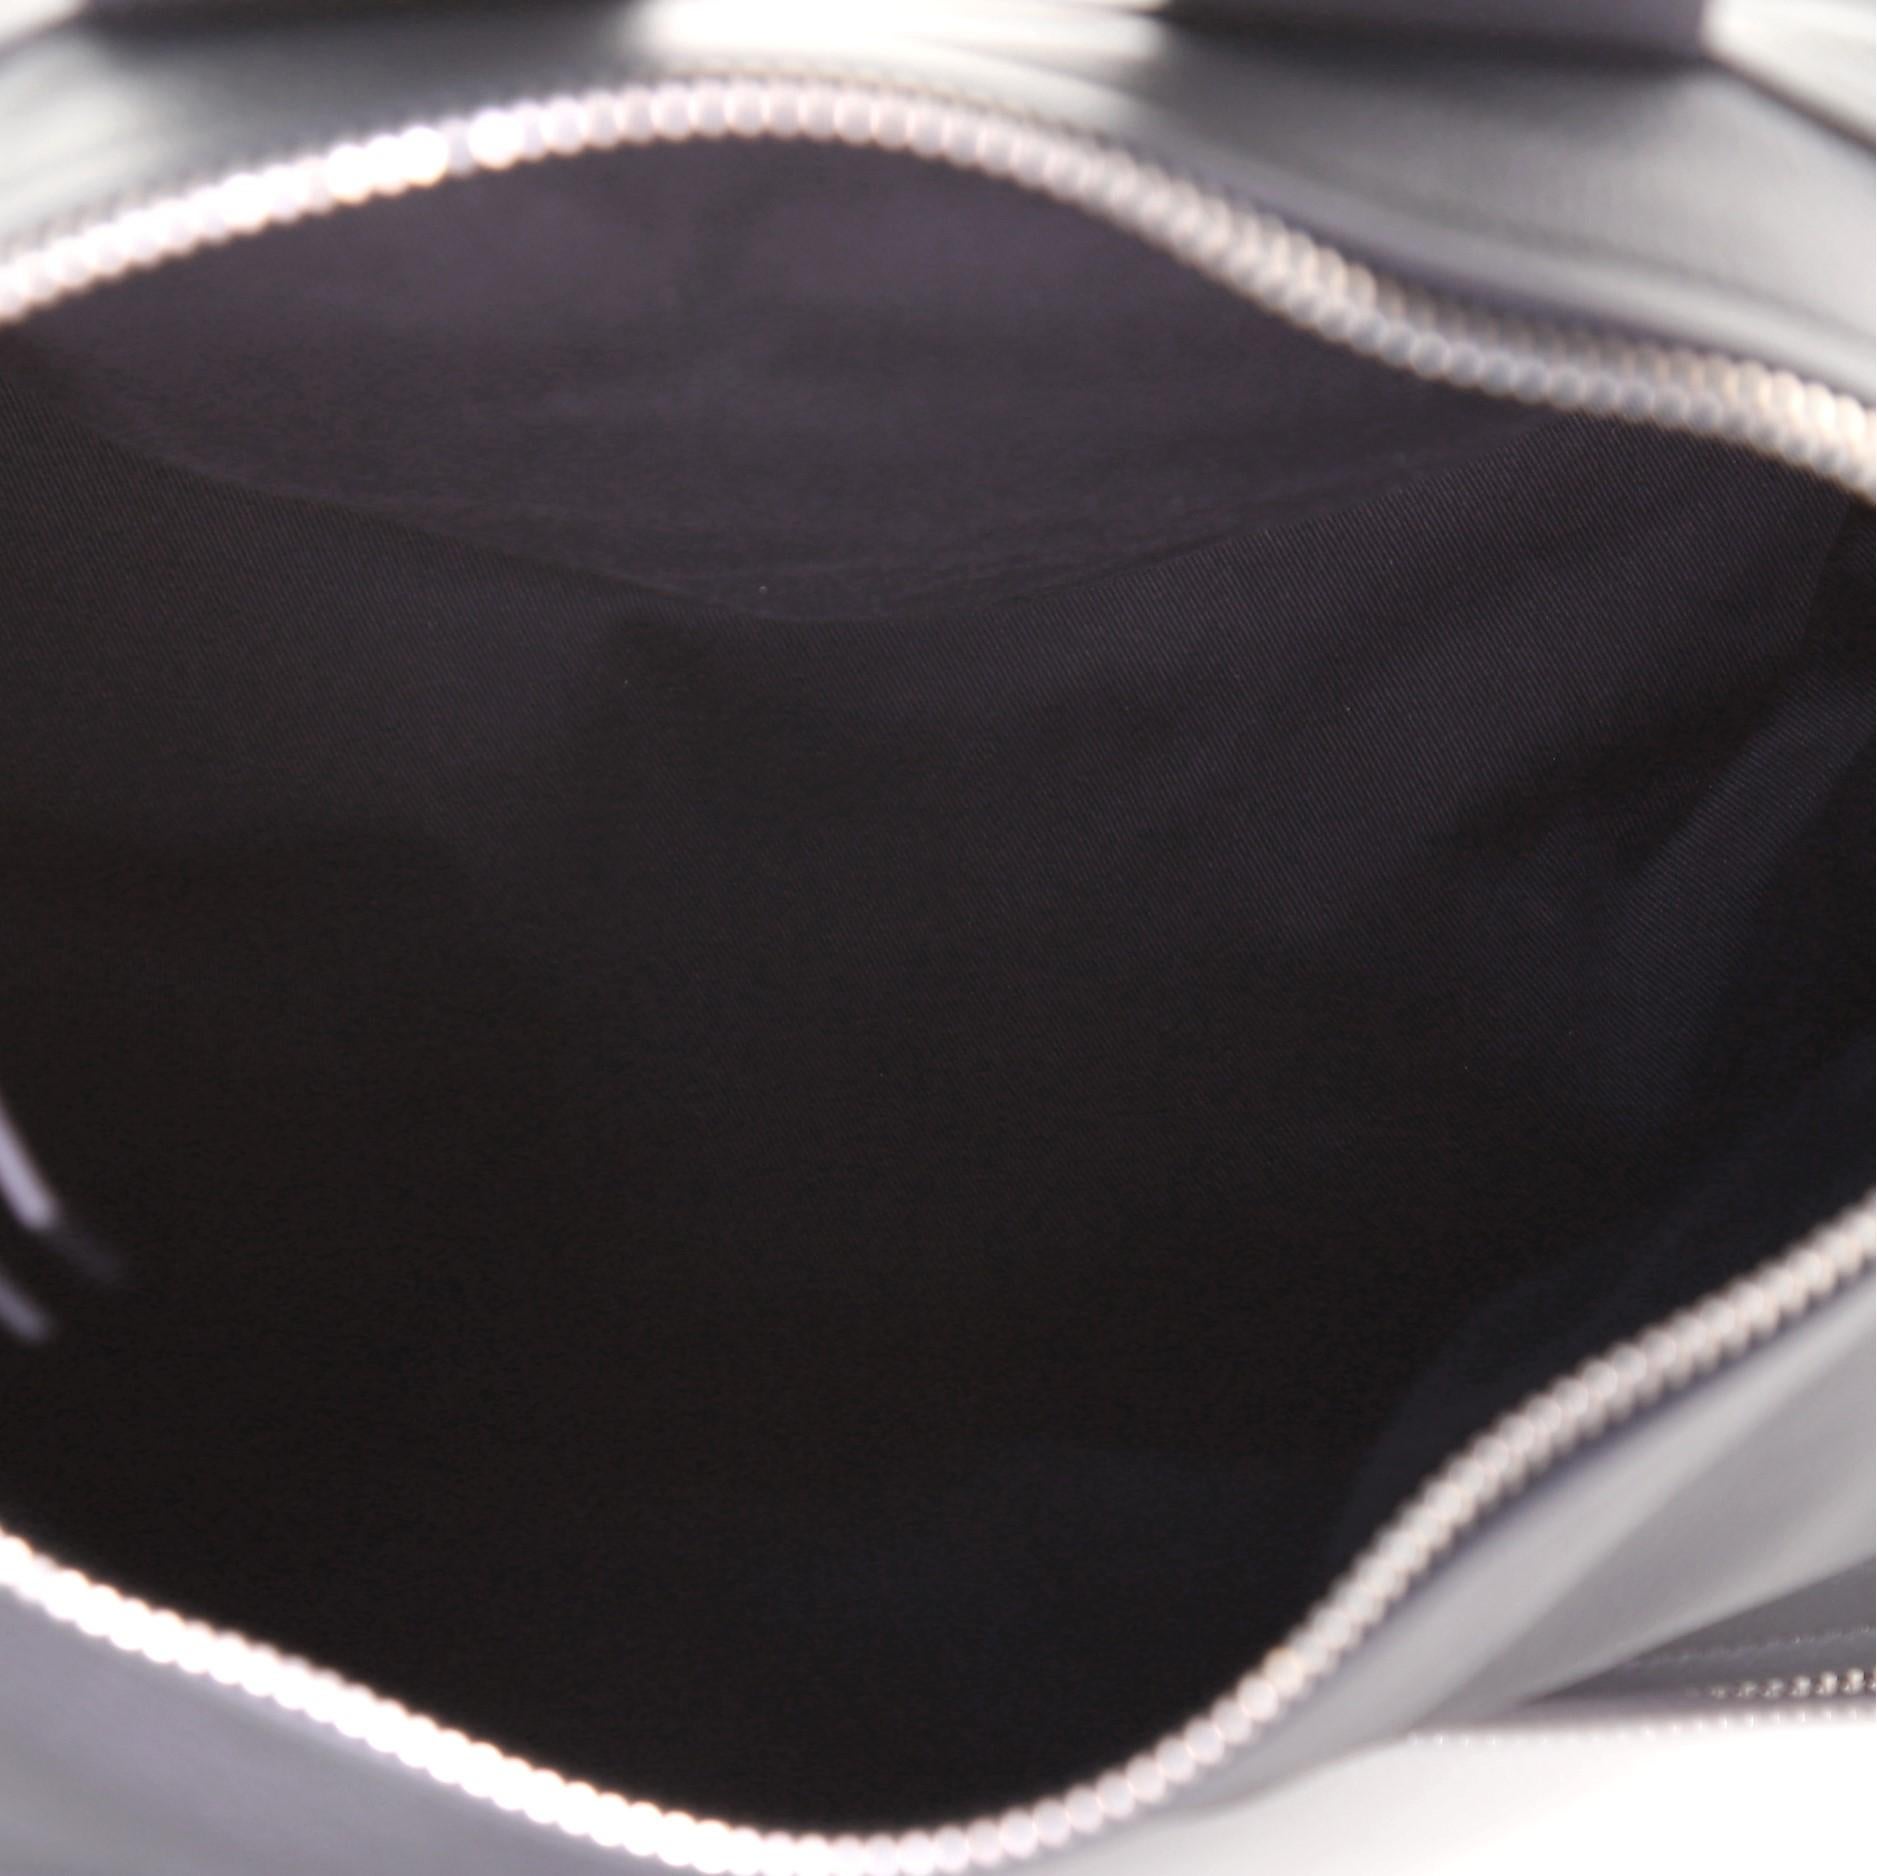 Black Givenchy Pandora Messenger Bag Leather Large